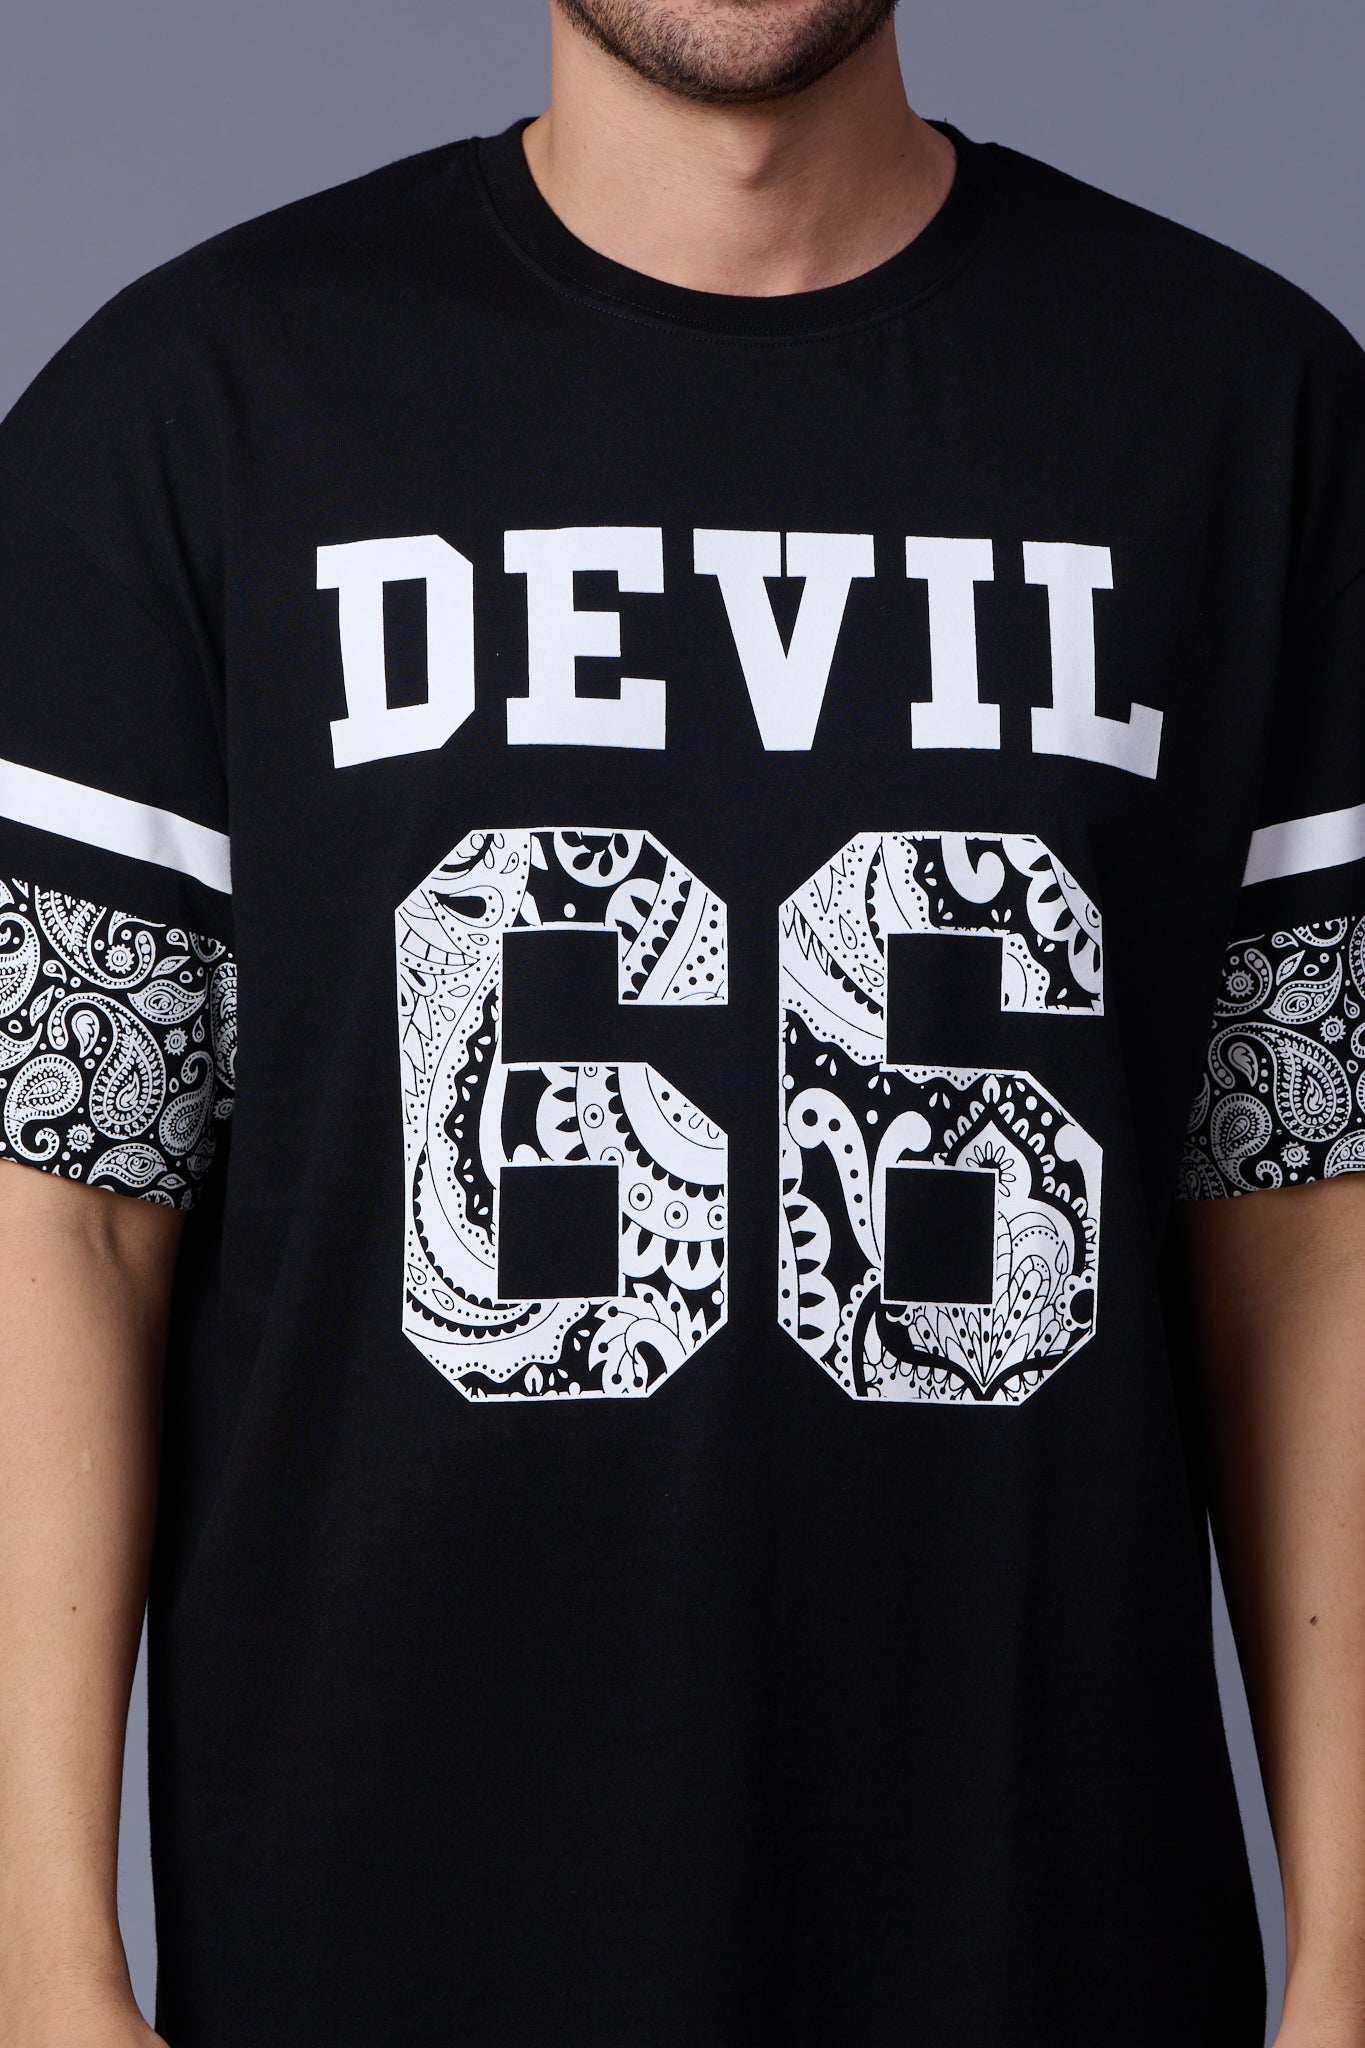 Go Devil 66 (In White) Paisely  Printed Black Oversized T-Shirt for Men